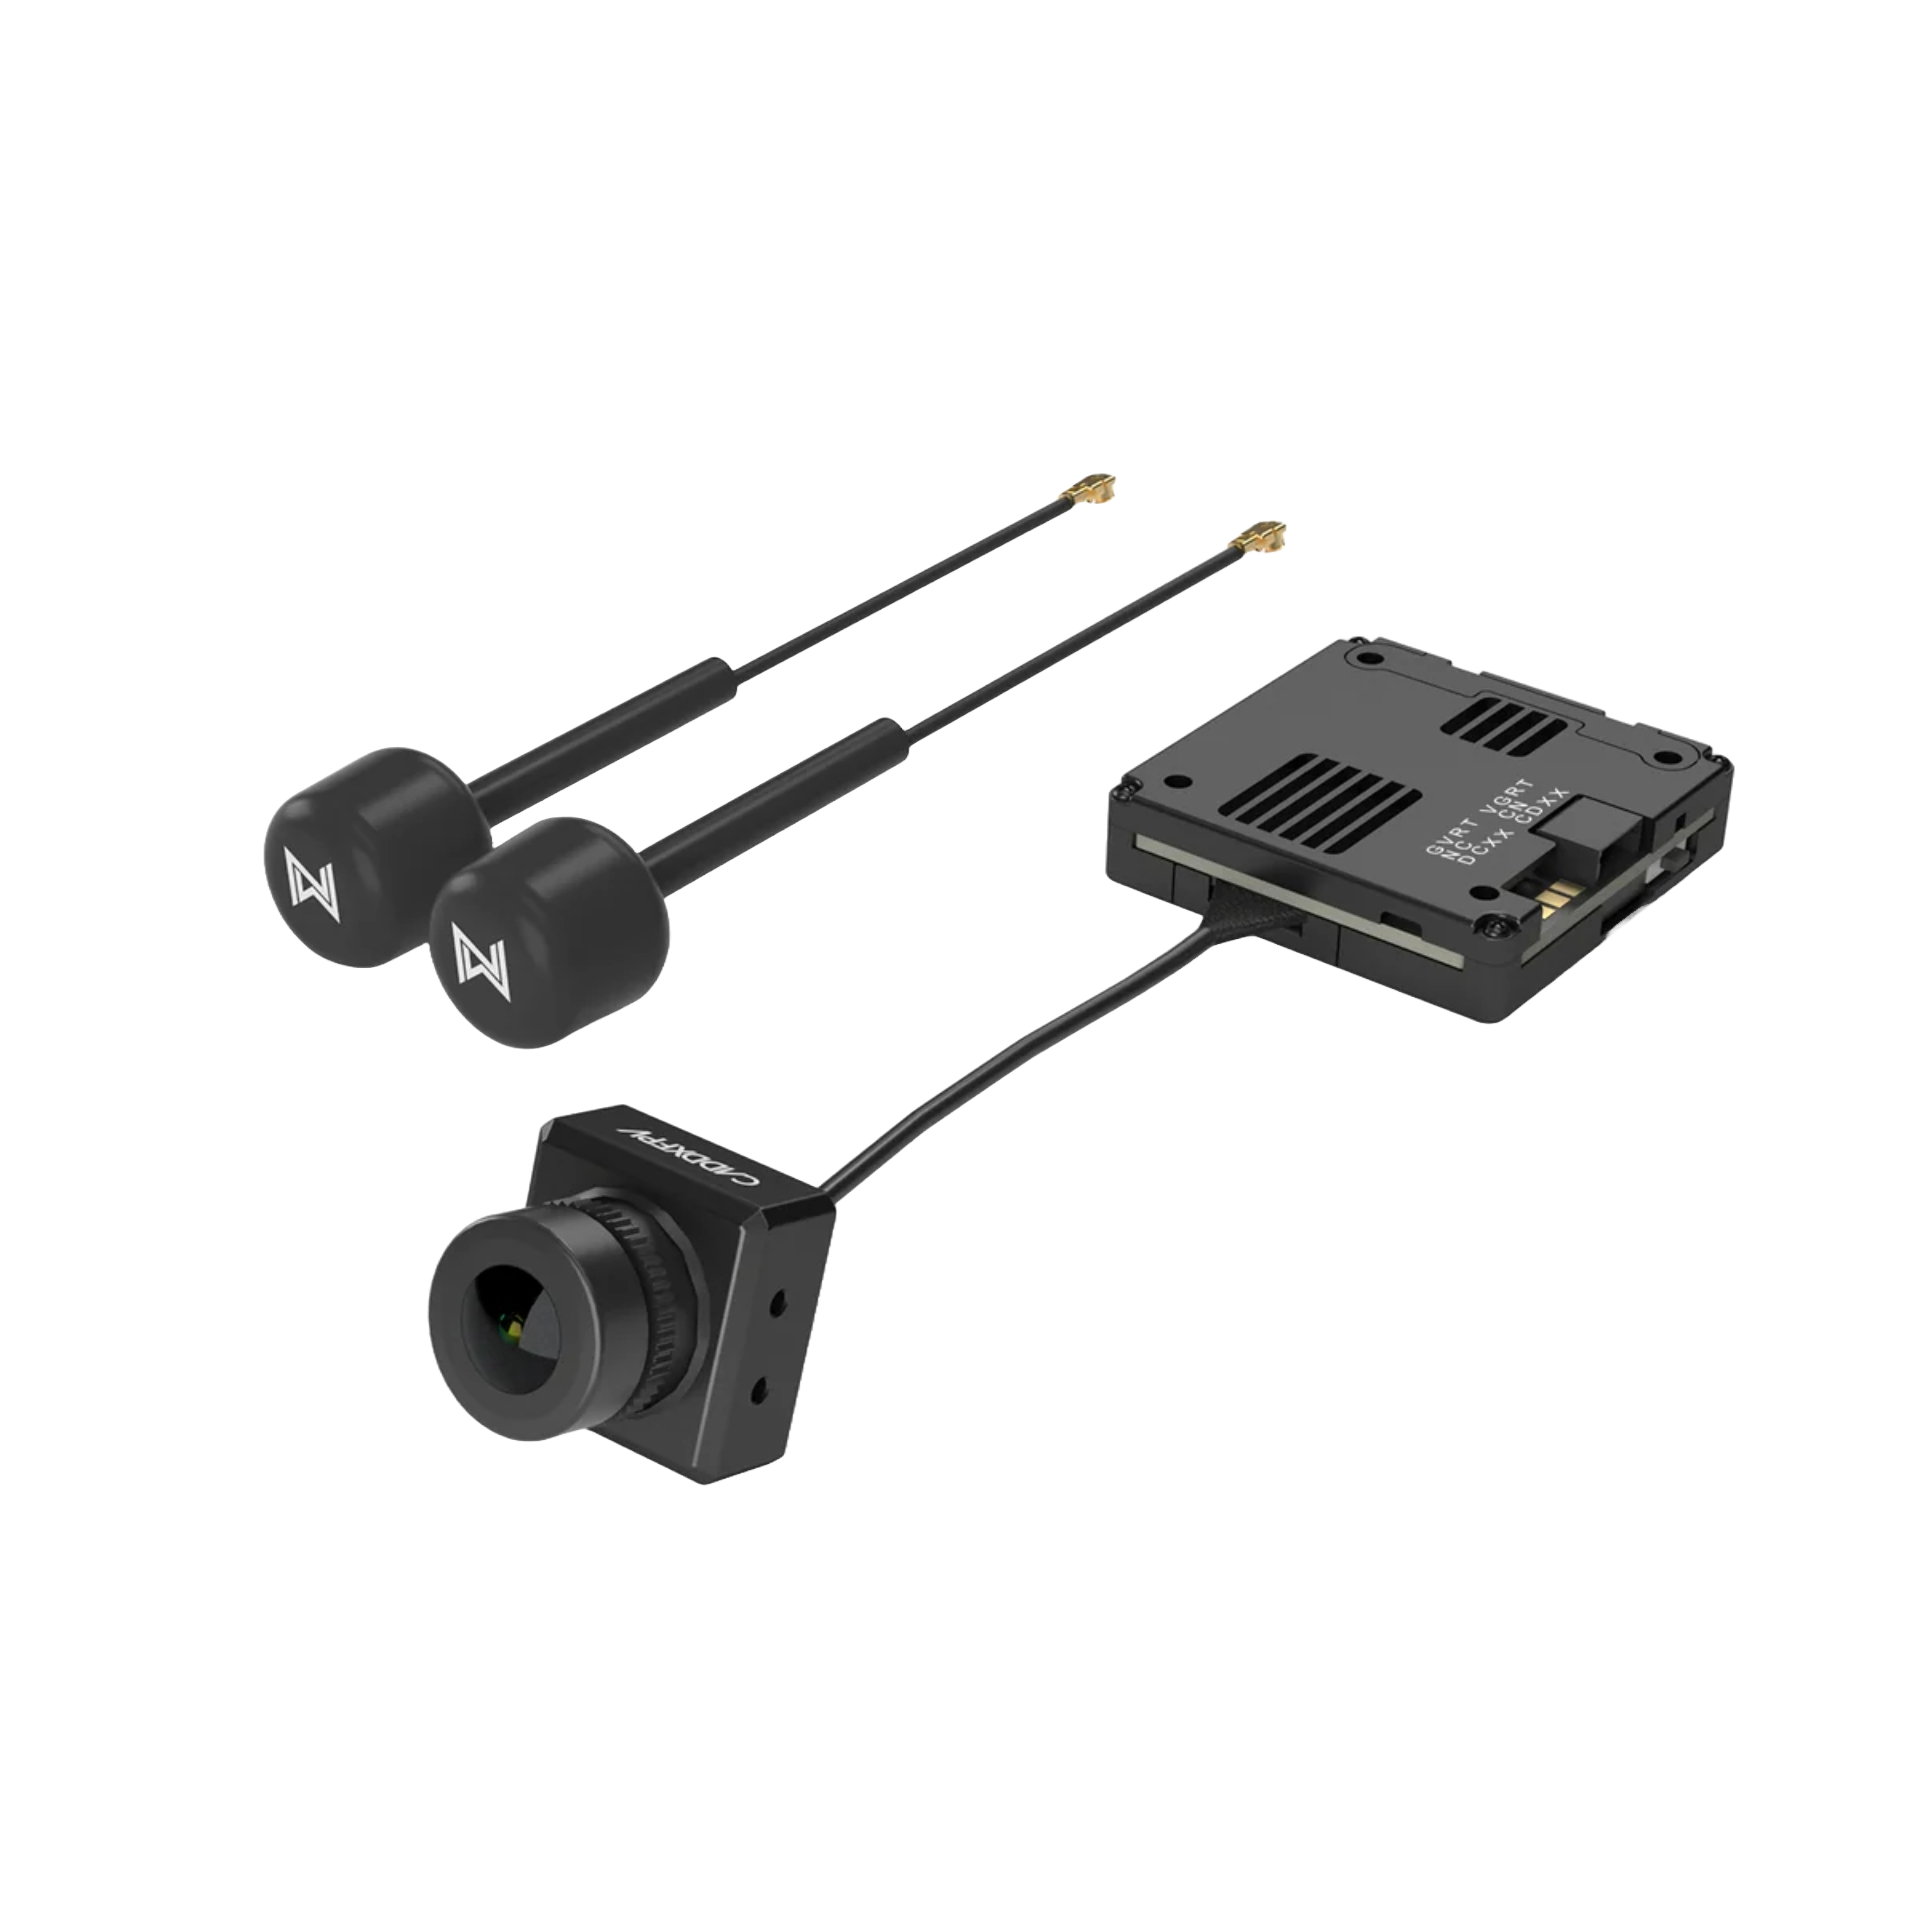 Walksnail Avatar HD Kit V2 (Dual Antennas Version) - DroneDynamics.ca